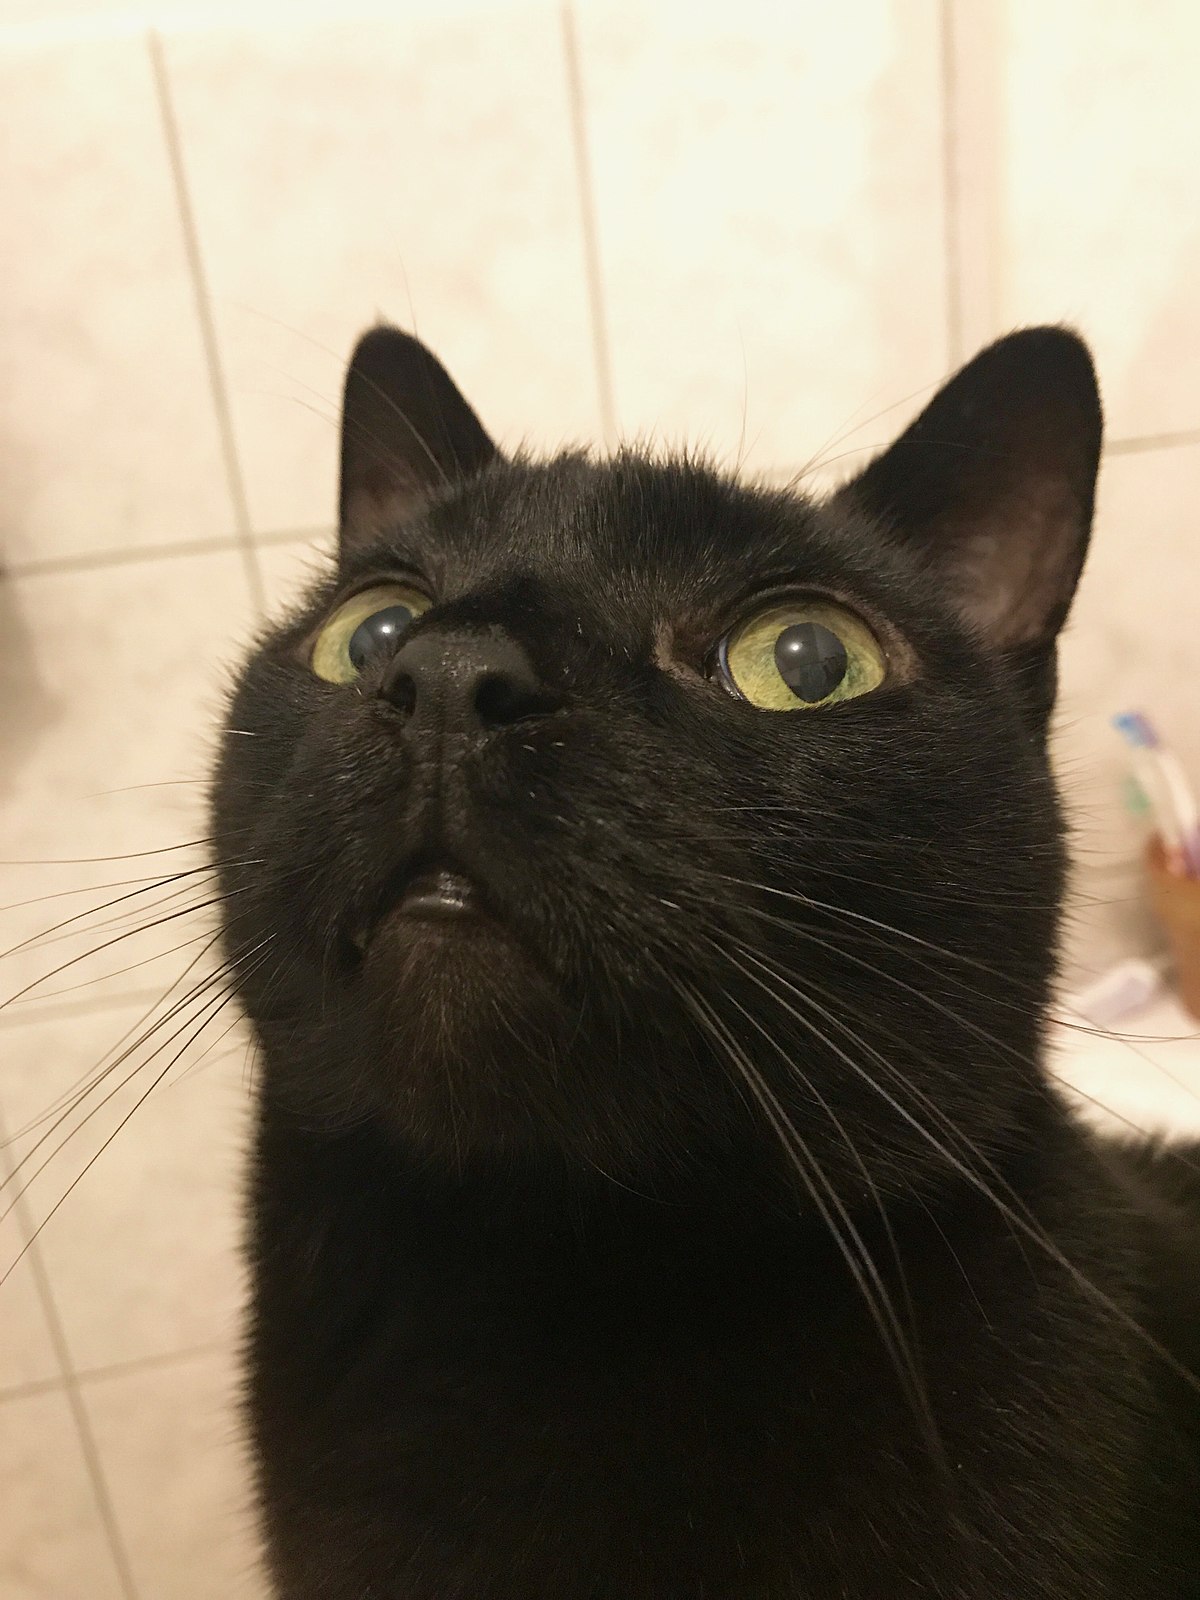 Black cat - Wikipedia